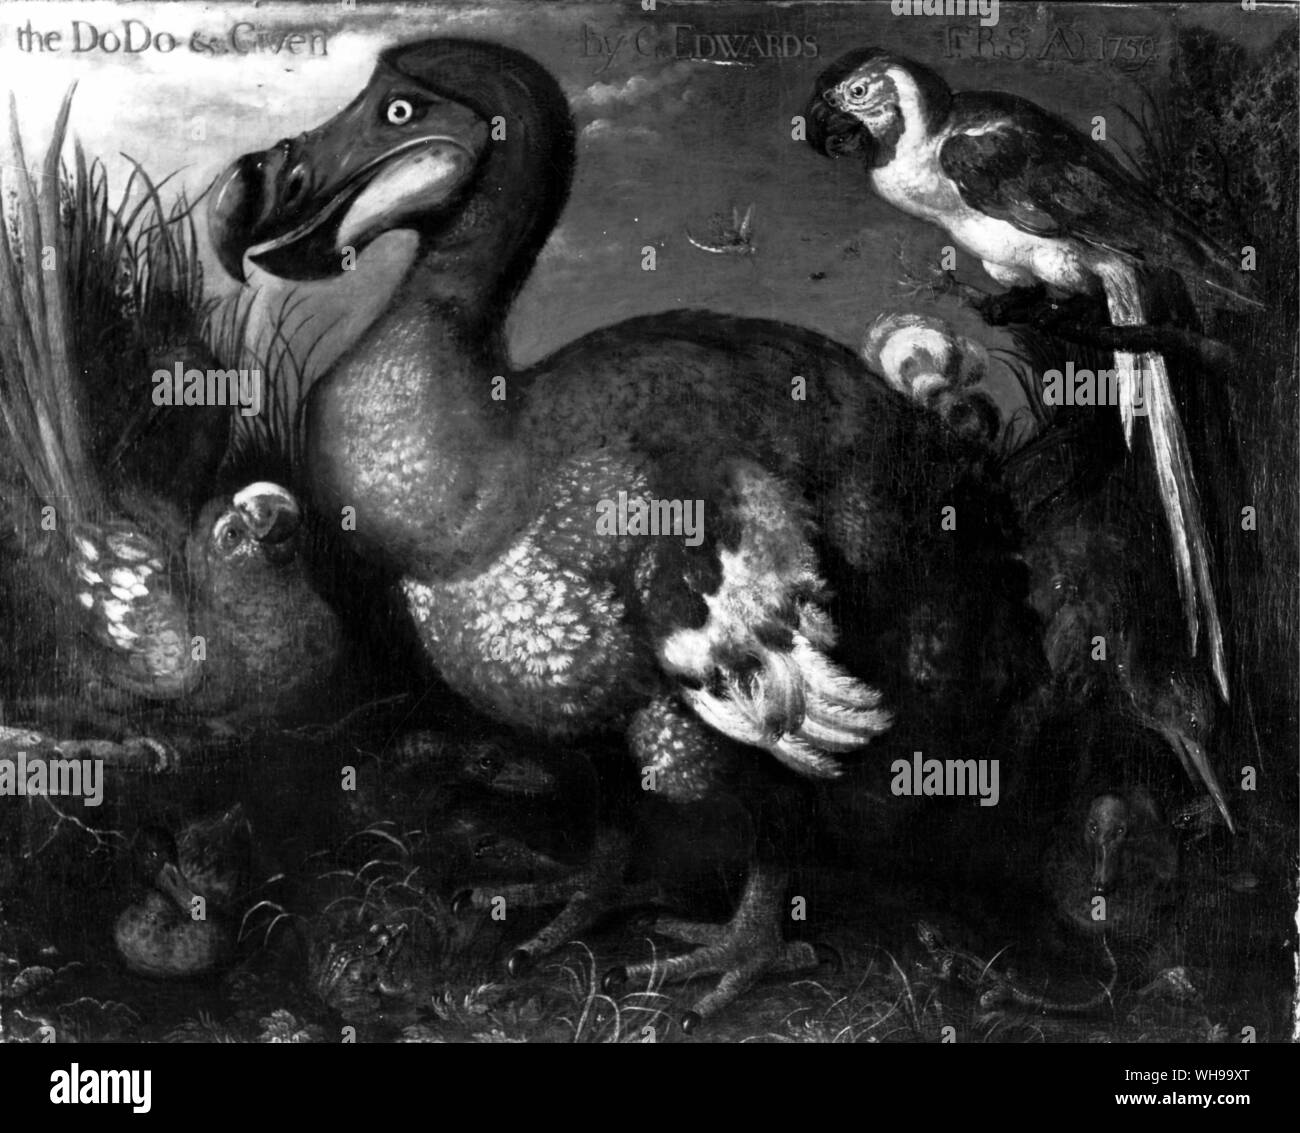 Der Dodo (Gemälde von savery), den flugunfähigen Vogel von Mauritius, die von 1681 ausgestorben war Stockfoto